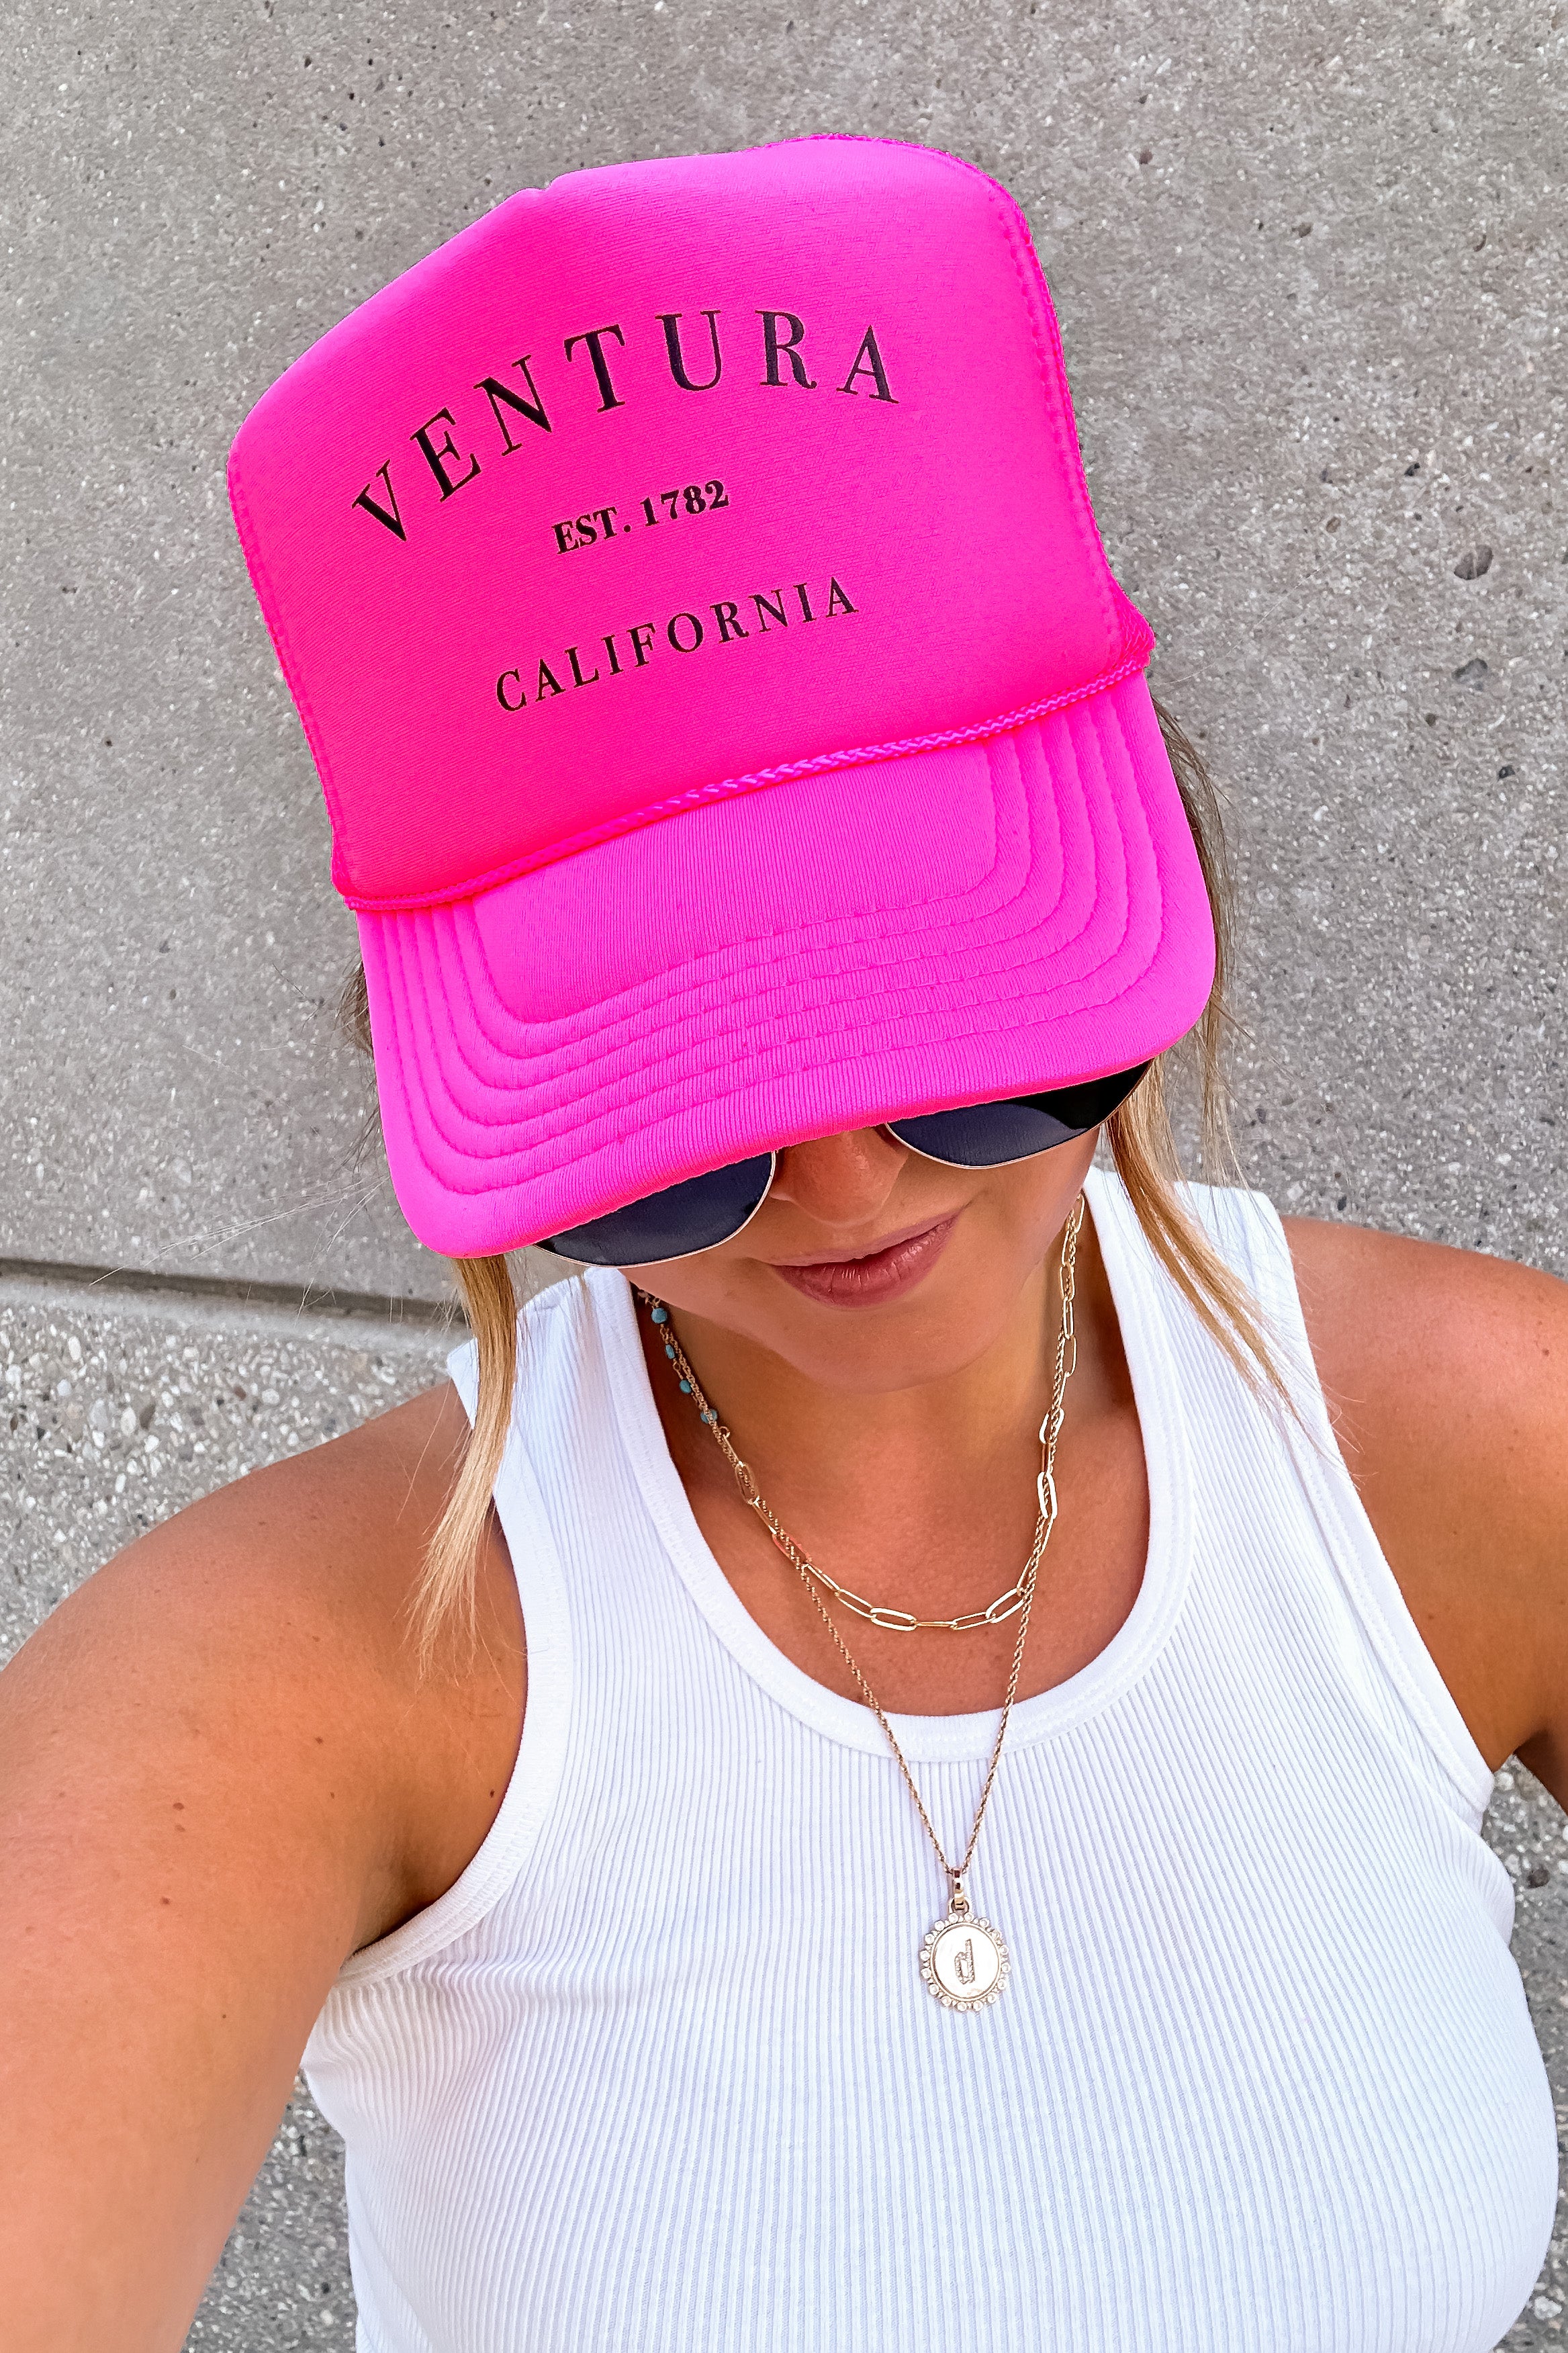 Ventura EST. 1782 Trucker Hat (Neon Pink)